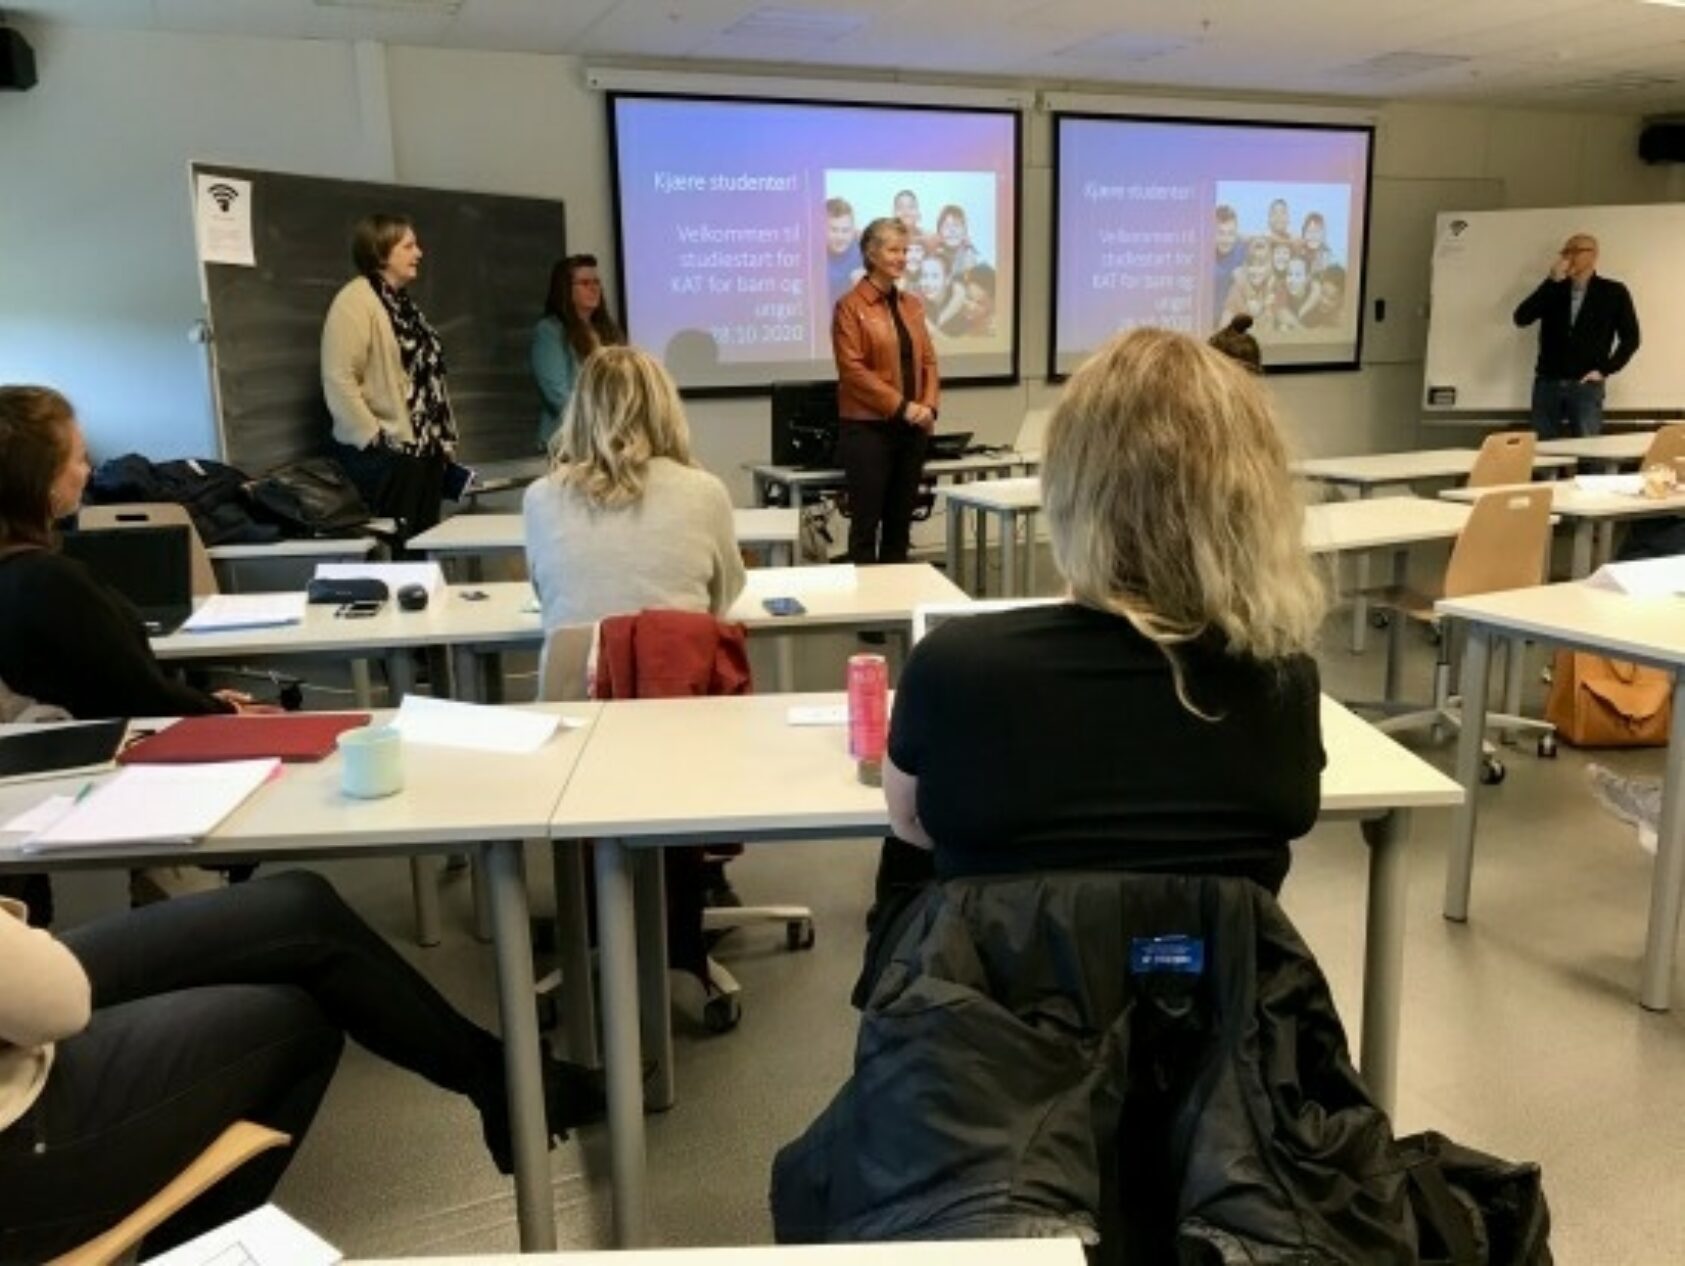 Foto: Universitetet i Stavanger, Dekan ved Det helsevitenskapelige fakultet, UiS, Kristin Akerjordet ønsker studentene velkommen til den nye videreutdanningen., Kat apning, , 